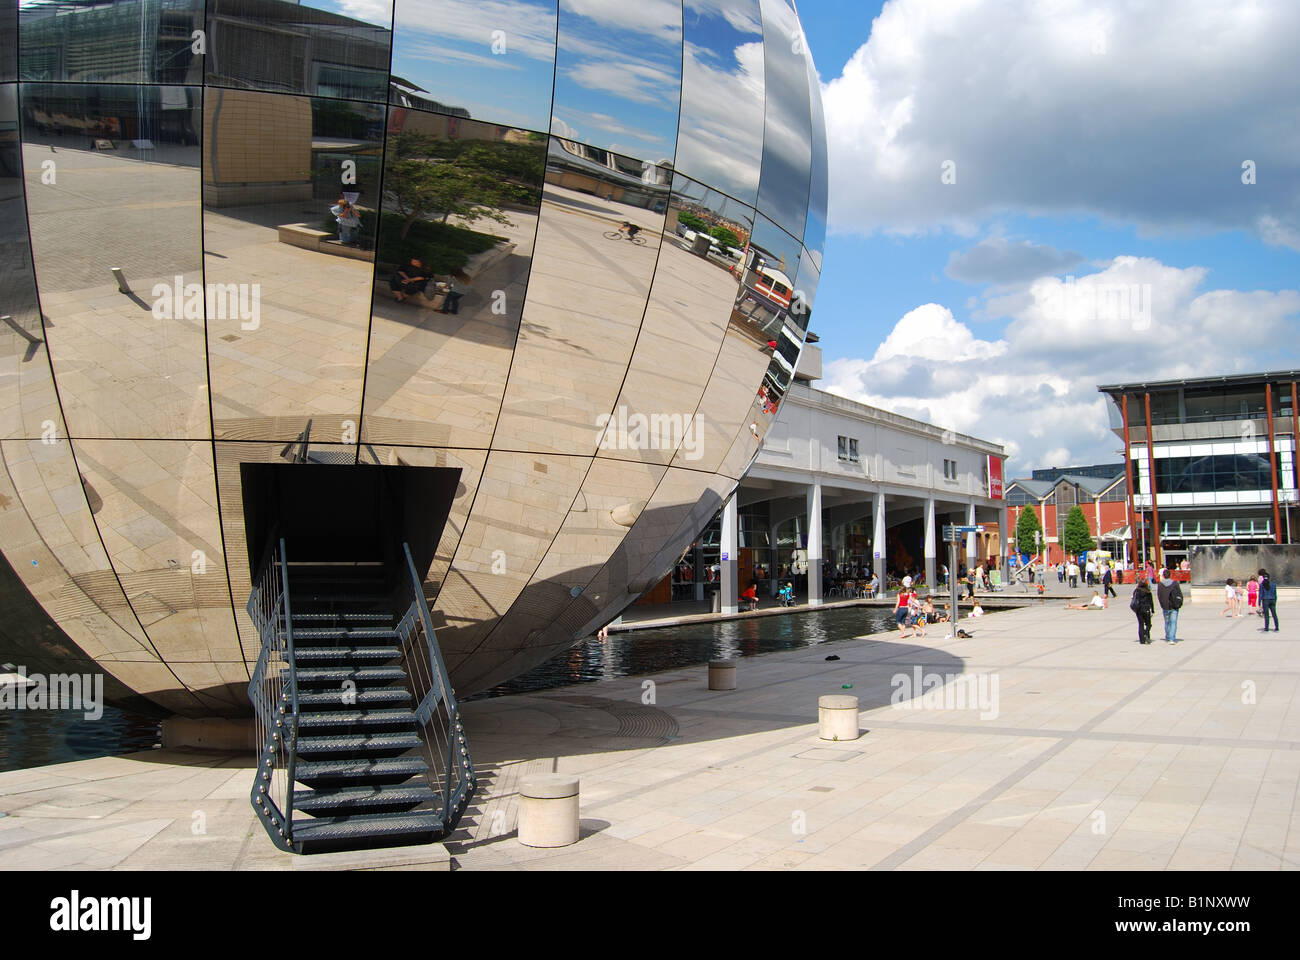 Mirrored Sphere Planetarium, At Bristol, Millennium Square, Harbourside, Bristol, England, United Kingdom Stock Photo